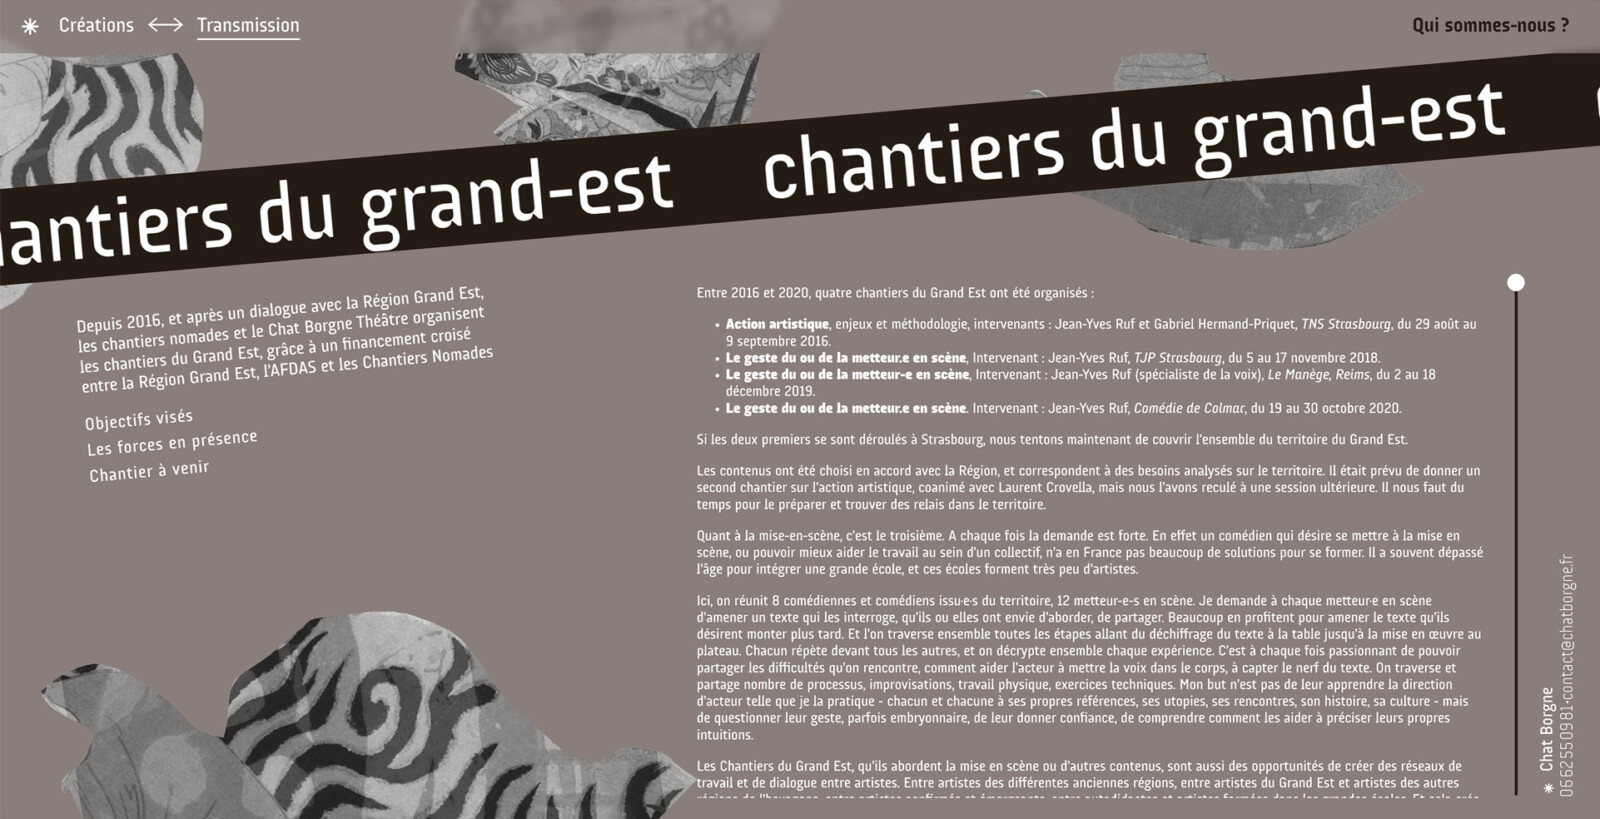 La page du projet Chantiers du grand-est, sur le site de Chat Borgne Théâtre. Le titre est installé dans un bandeau typo, signature du site.